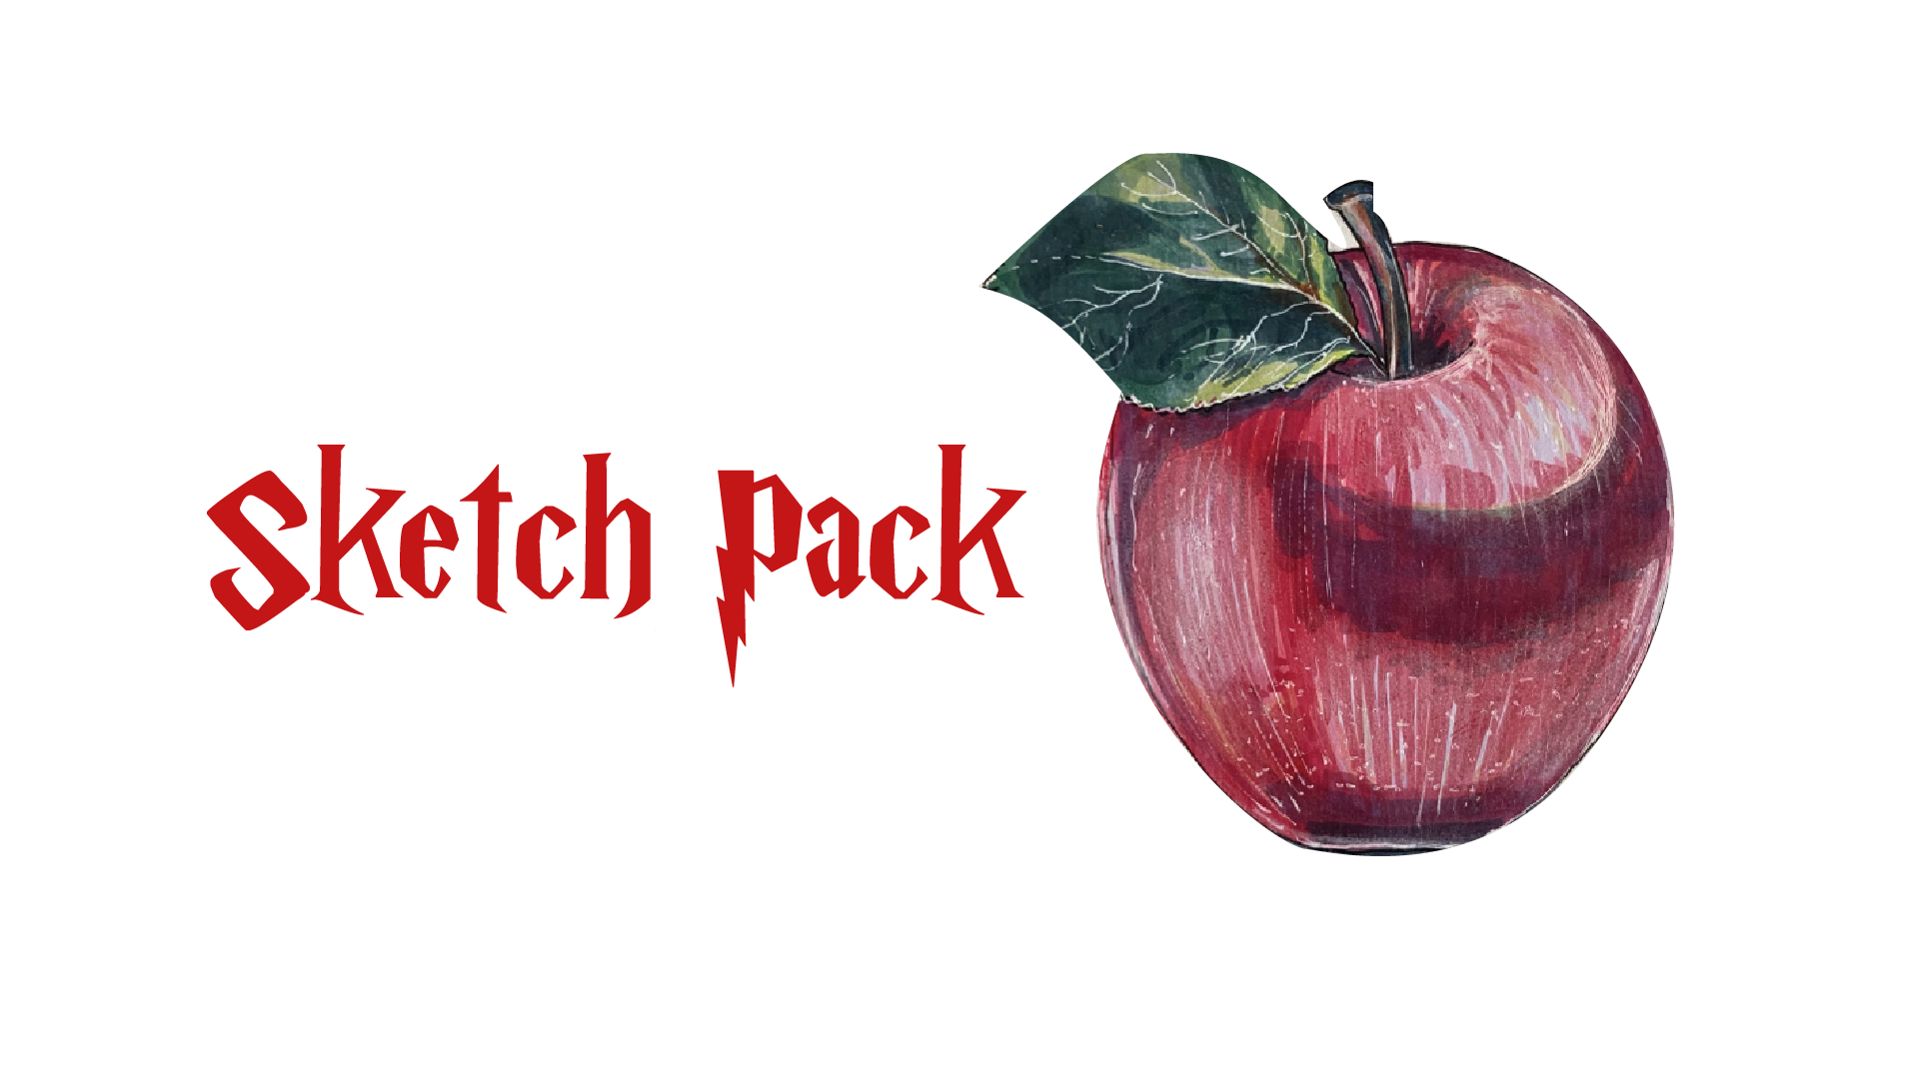 Как нарисовать реалистичное яблоко | Sketch Pack курс